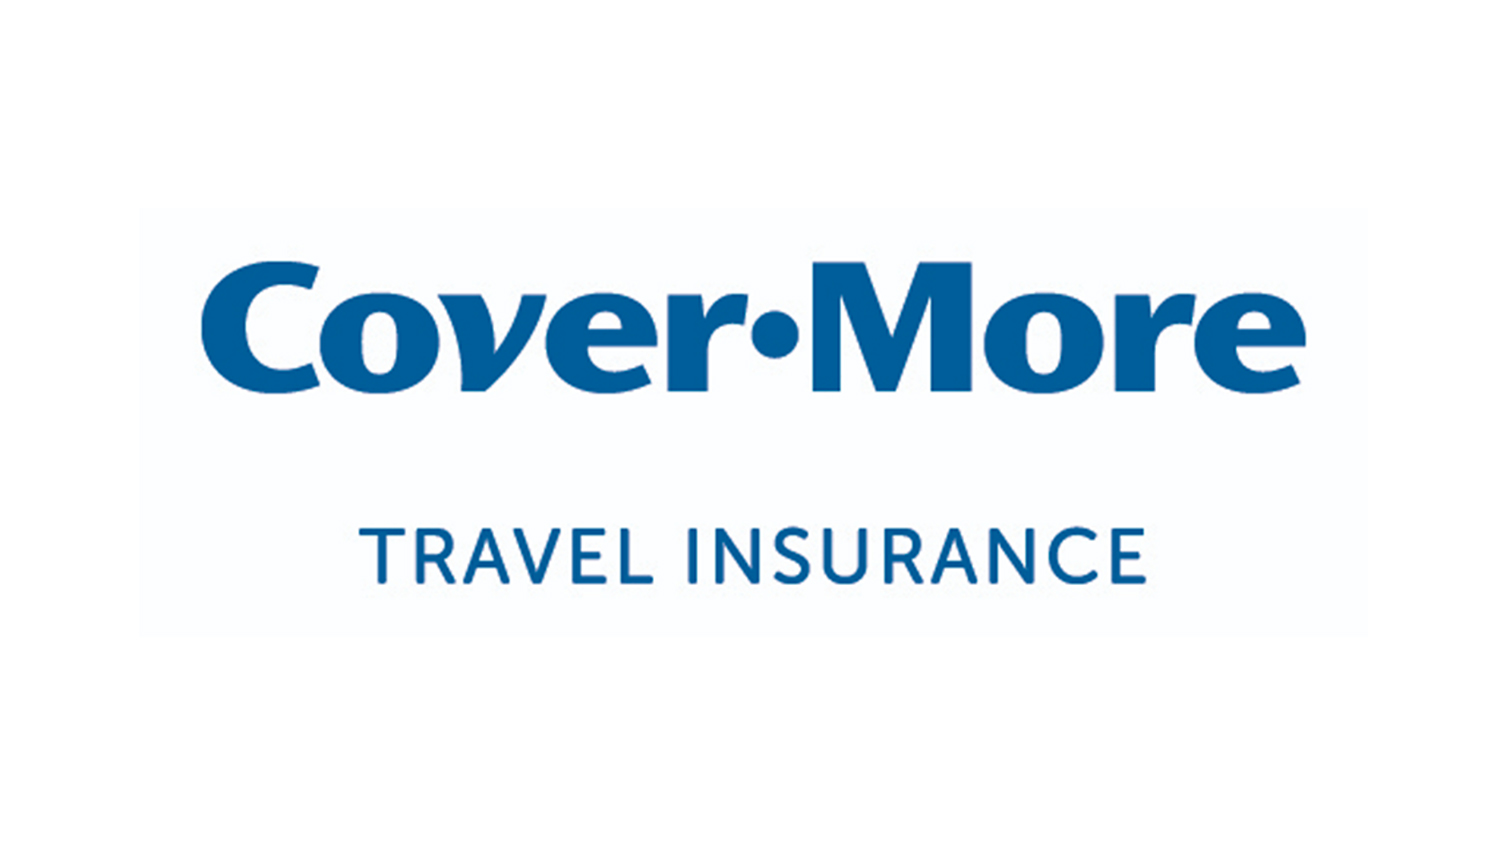 covermore travel insurance reddit